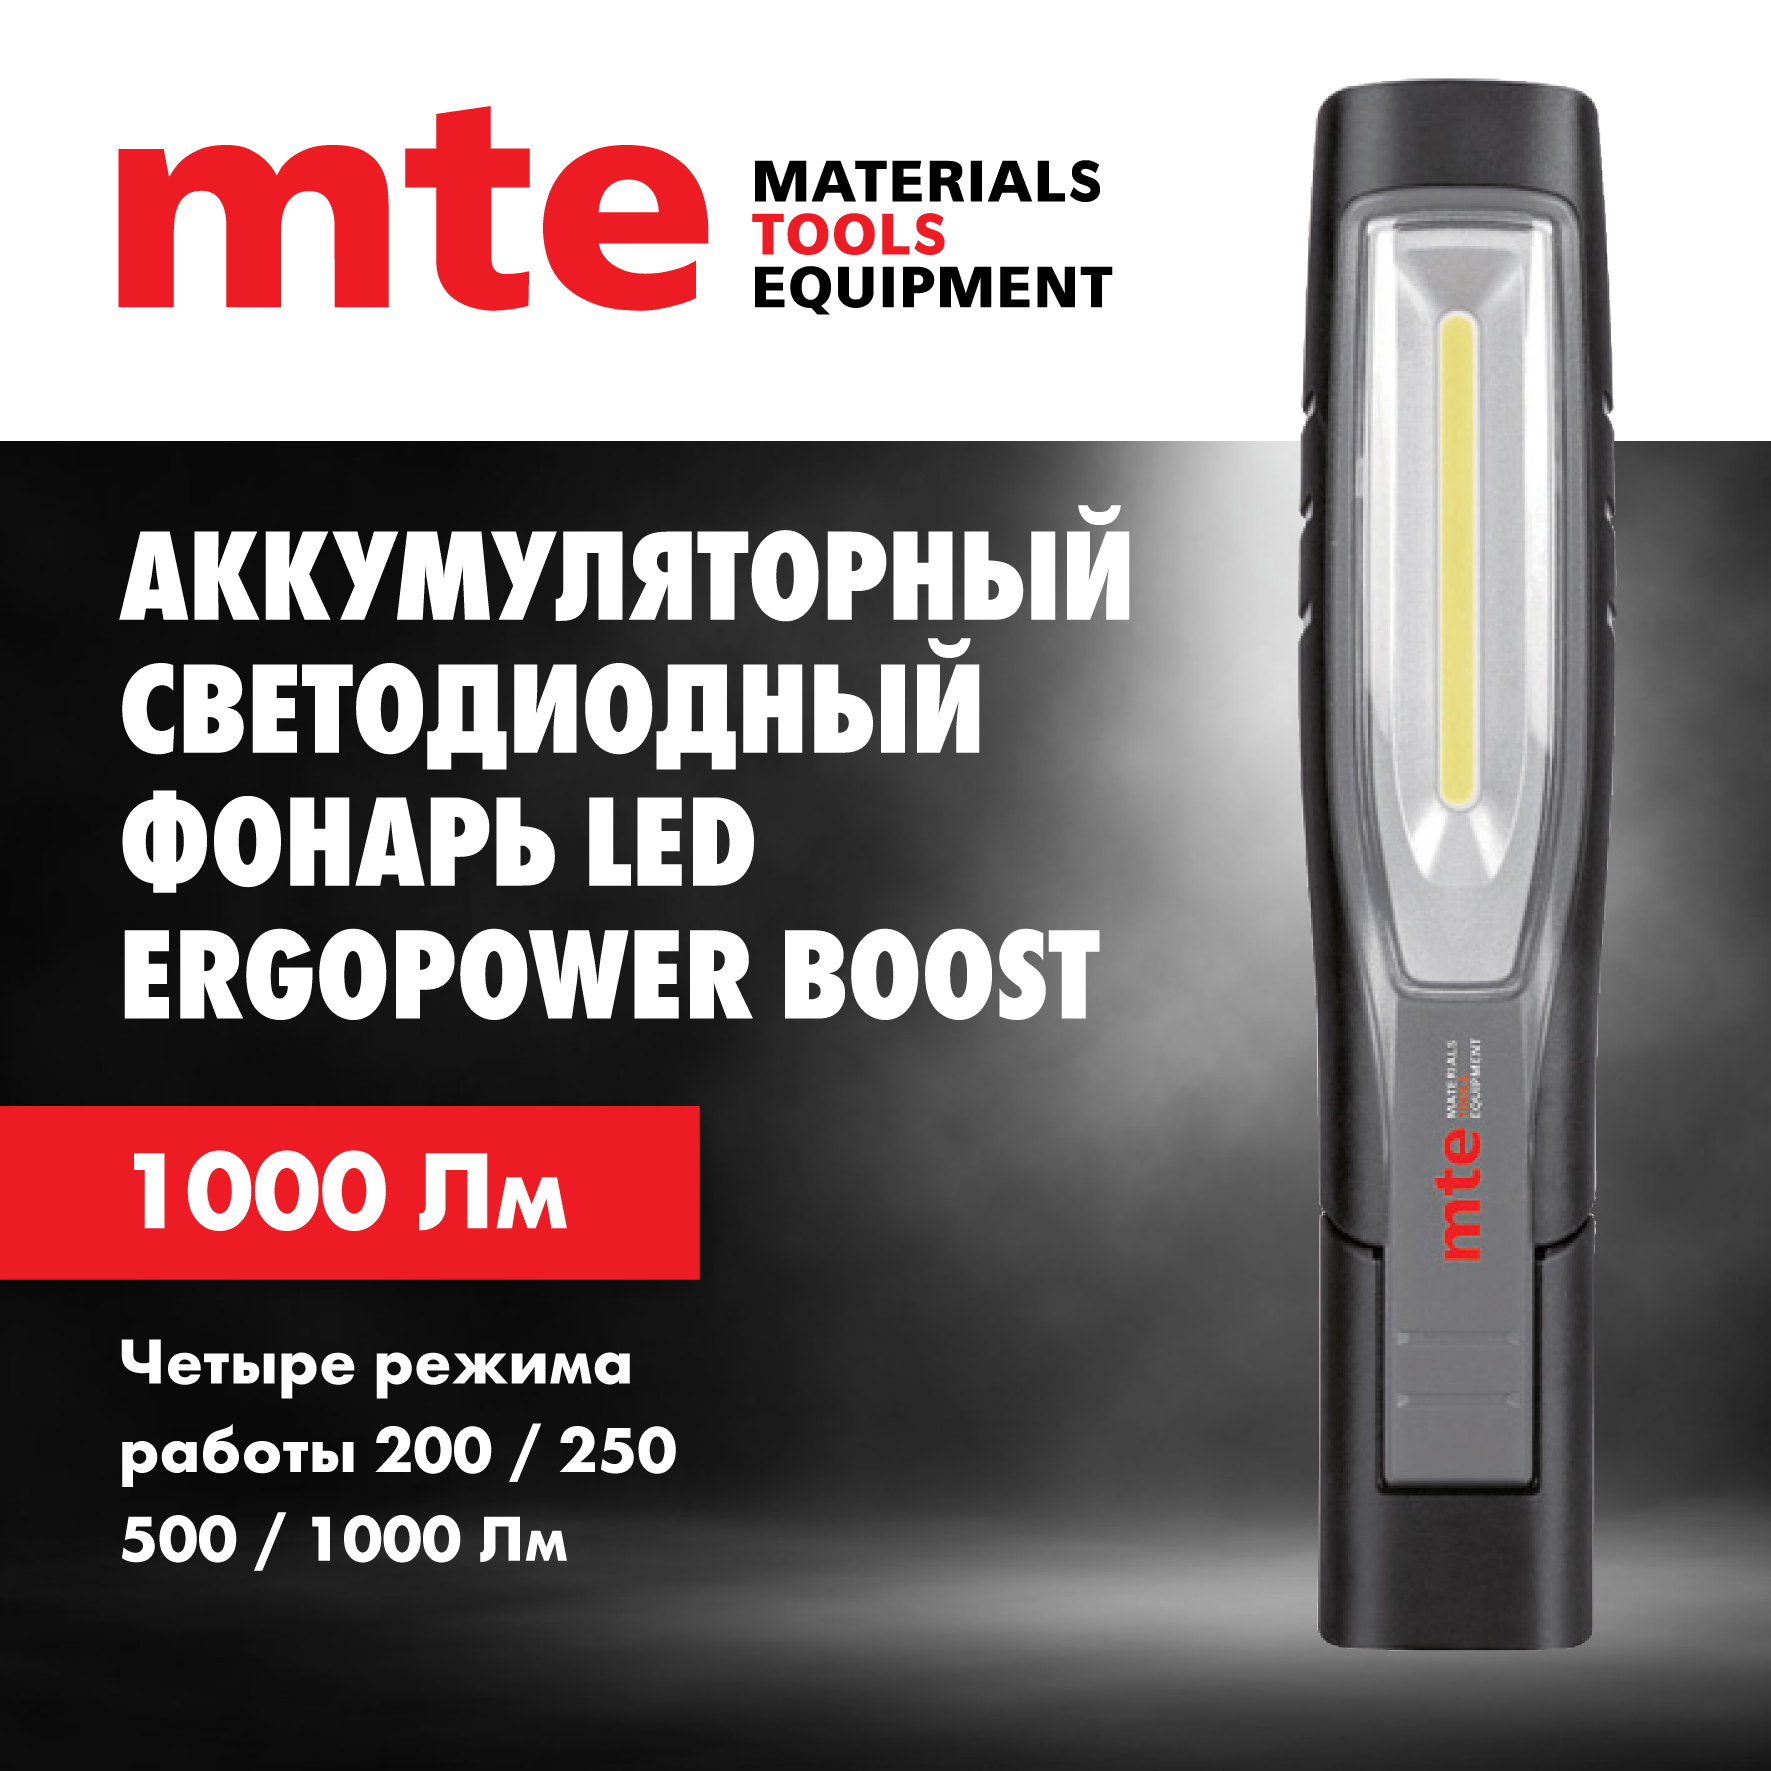 Аккумуляторный светодиодный фонарь mte led ERGOPOWER BOOST 2827940455